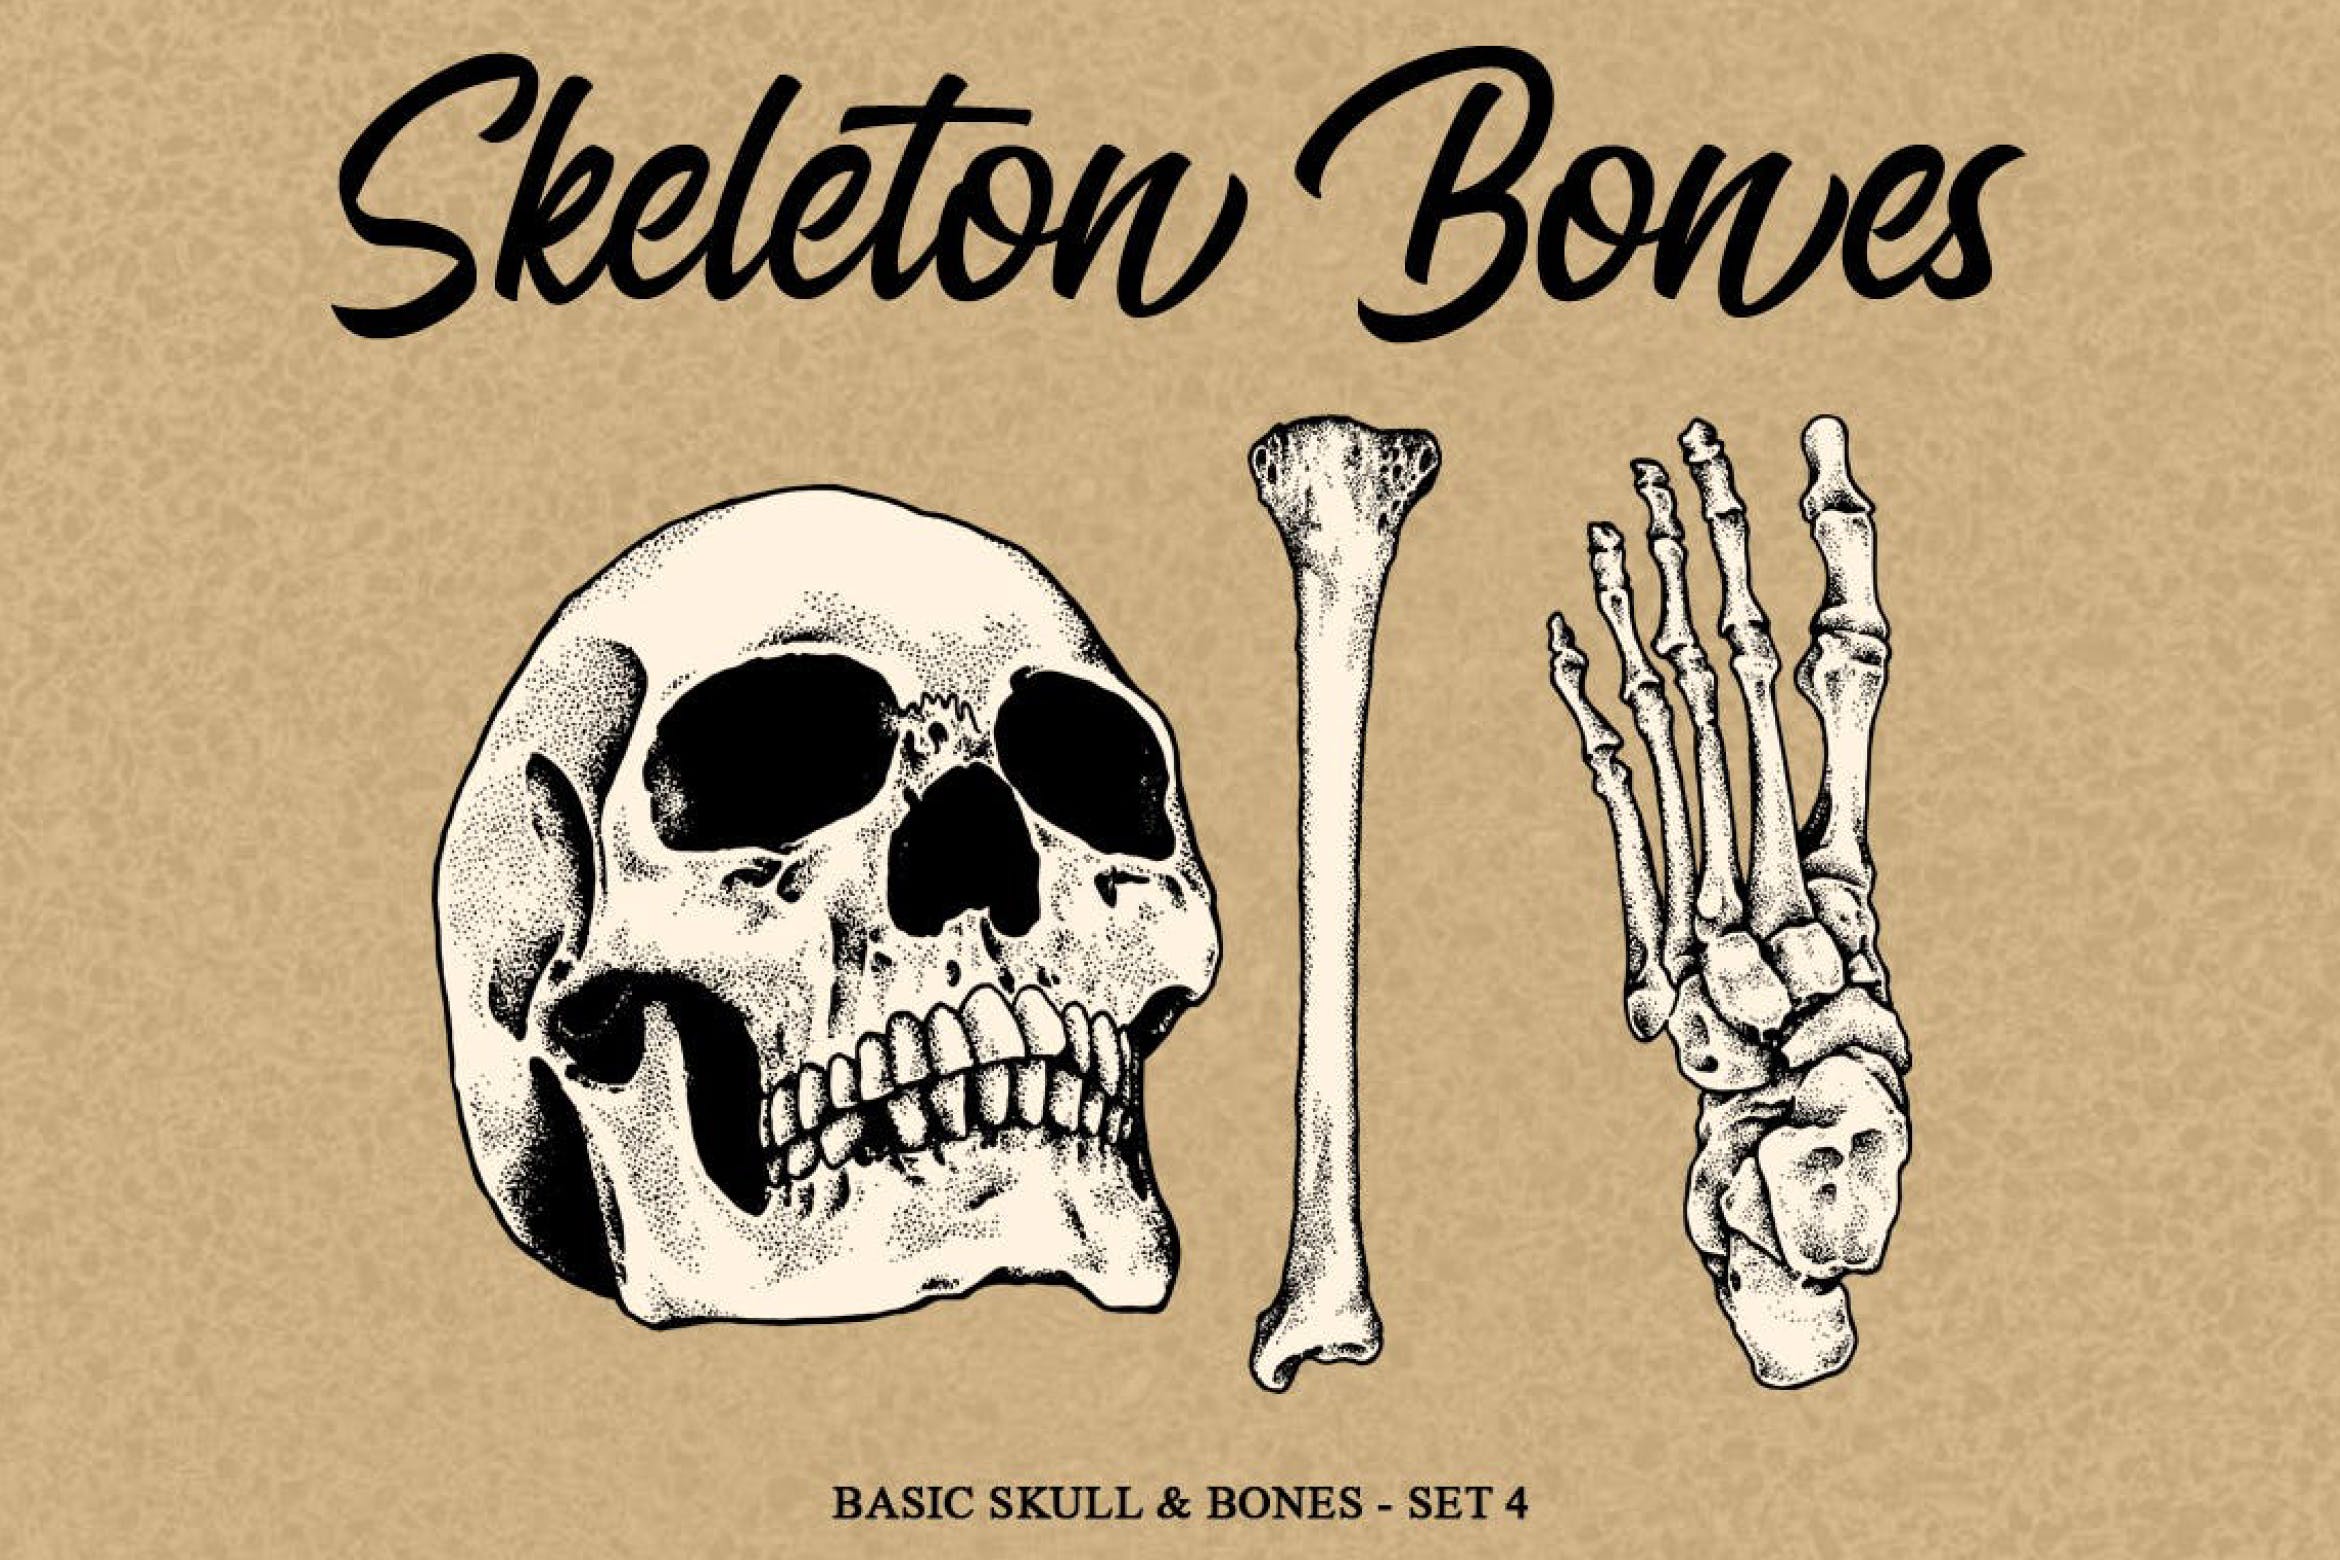 人体骨骼骷髅矢量手绘插画素材v4 Skeleton Bones set 4插图